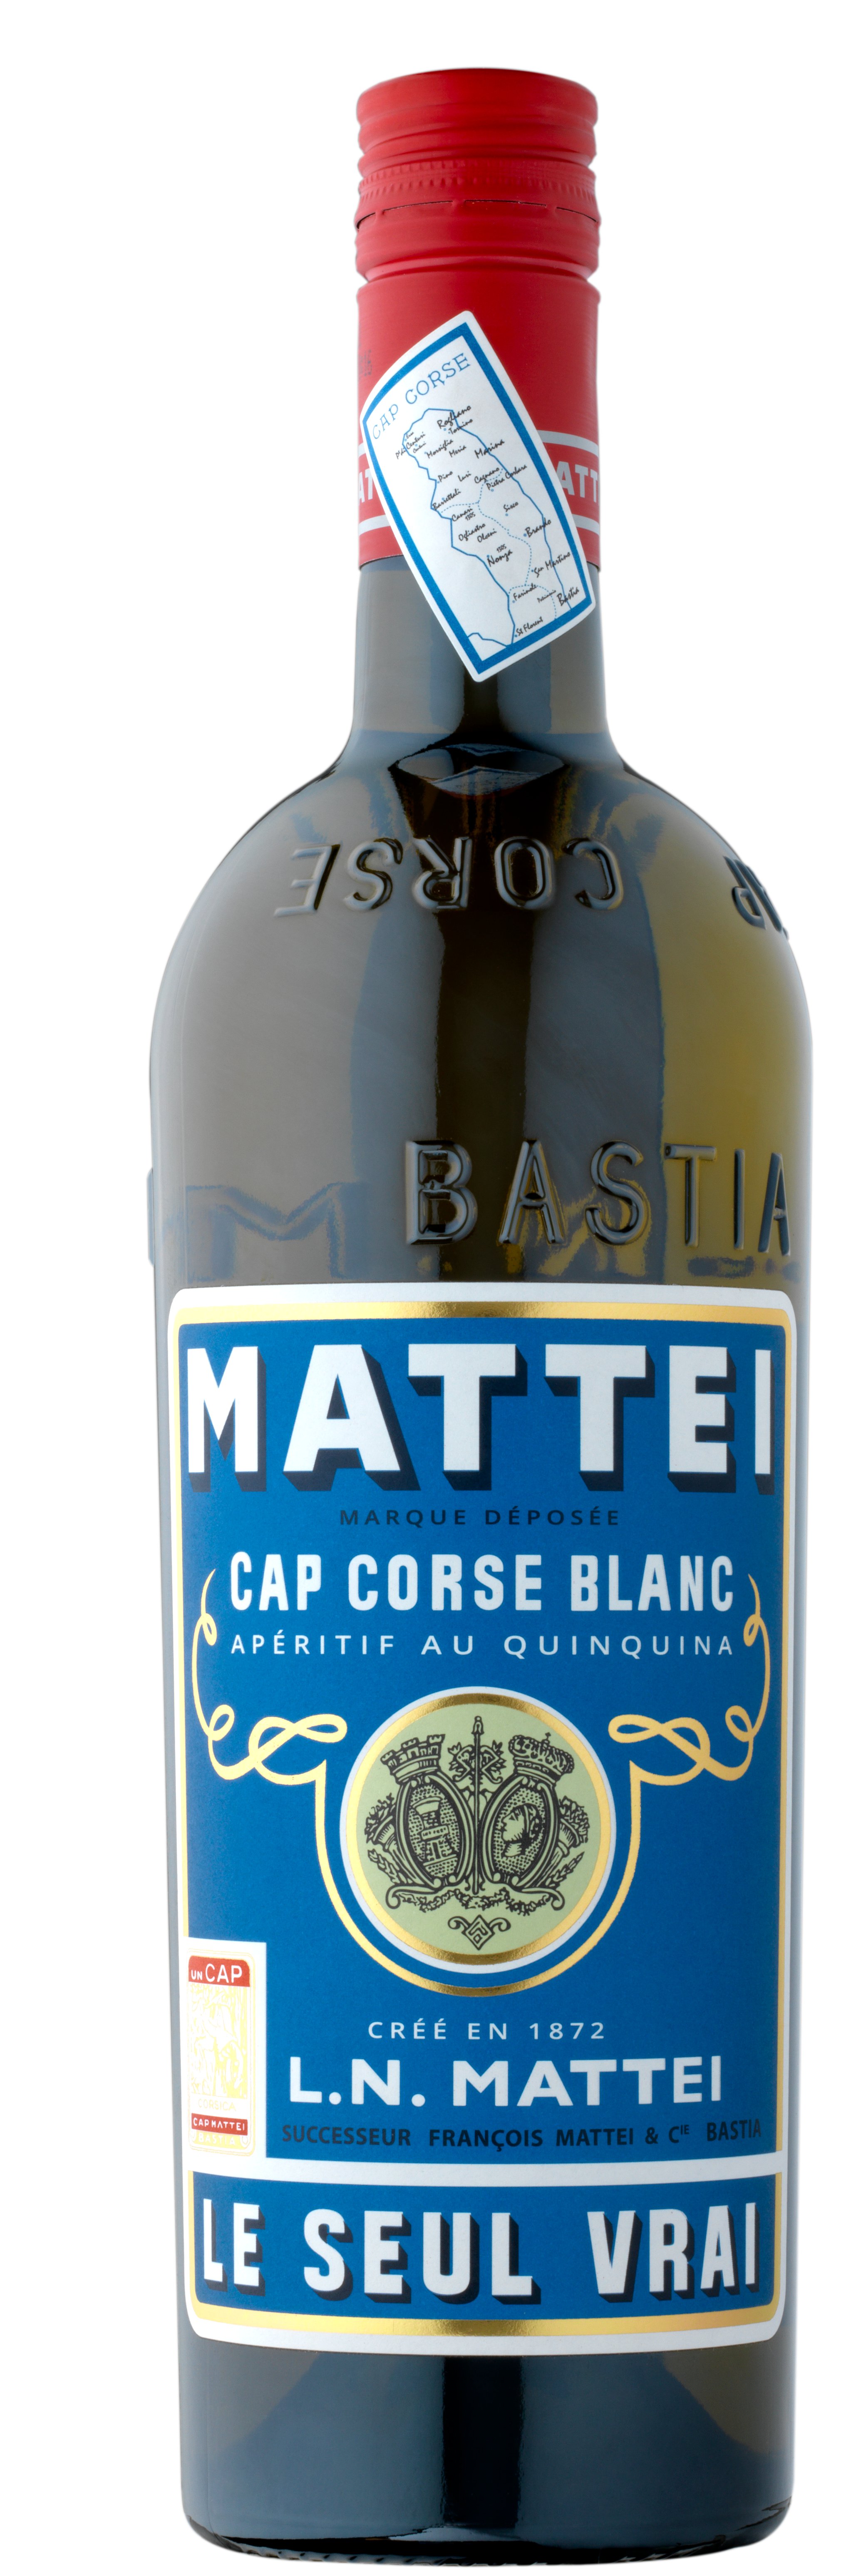 L.N. MATTEI Cap Corse Réserve Quinquina Blanc LE SEUL VRAI